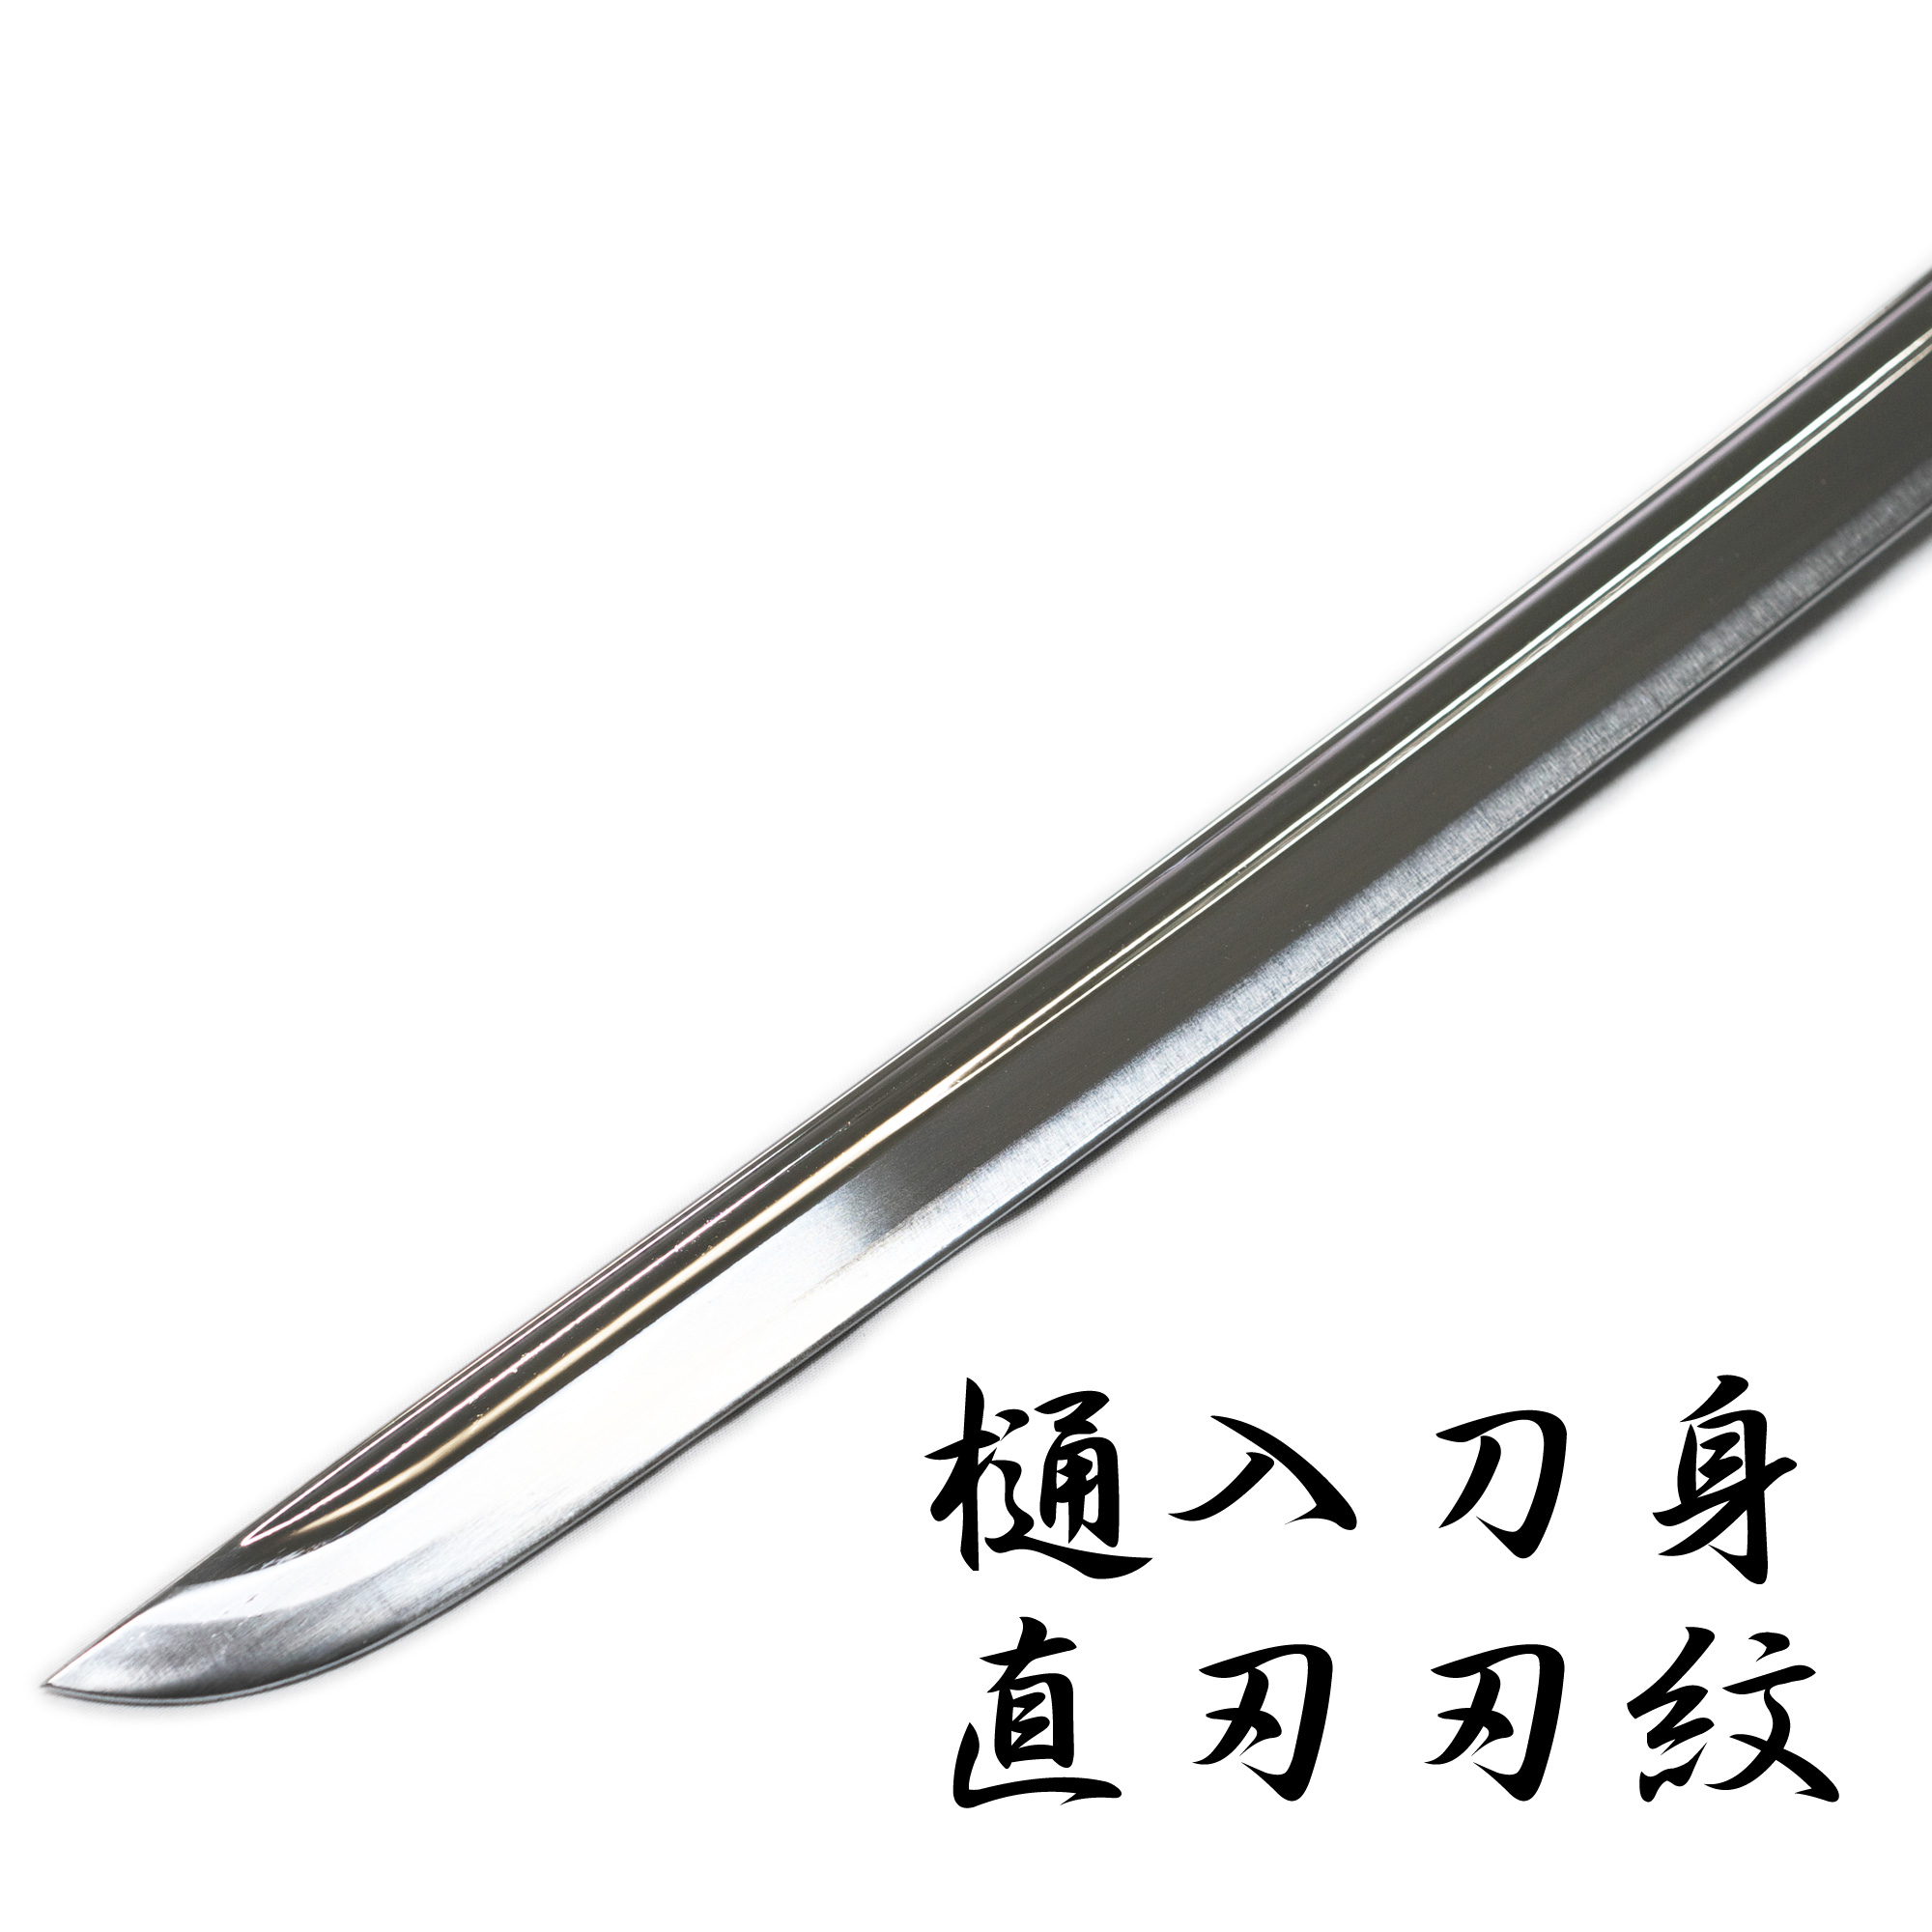 匠刀房 武田信玄 太刀拵 NEU-019 - 戦国シリーズ 模造刀